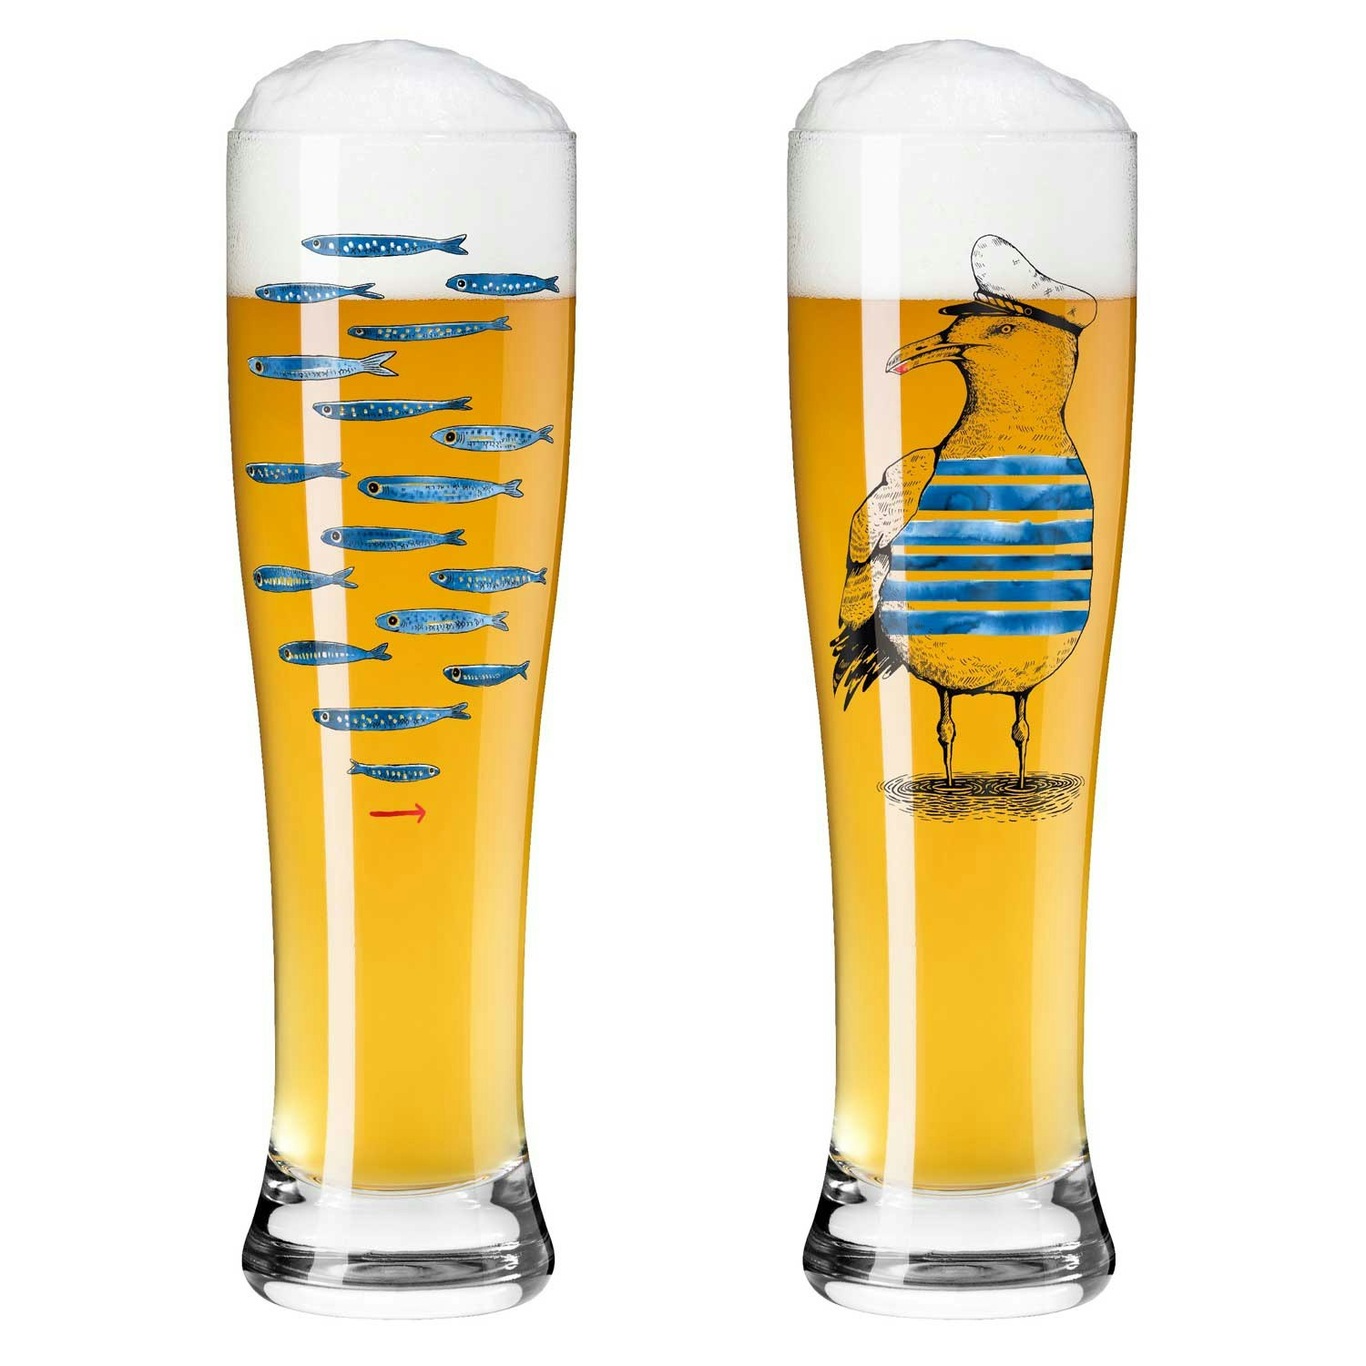 Brauchzeit Beer Glass 2-pack, @ RoyalDesign 14 - & Ritzenhoff #13